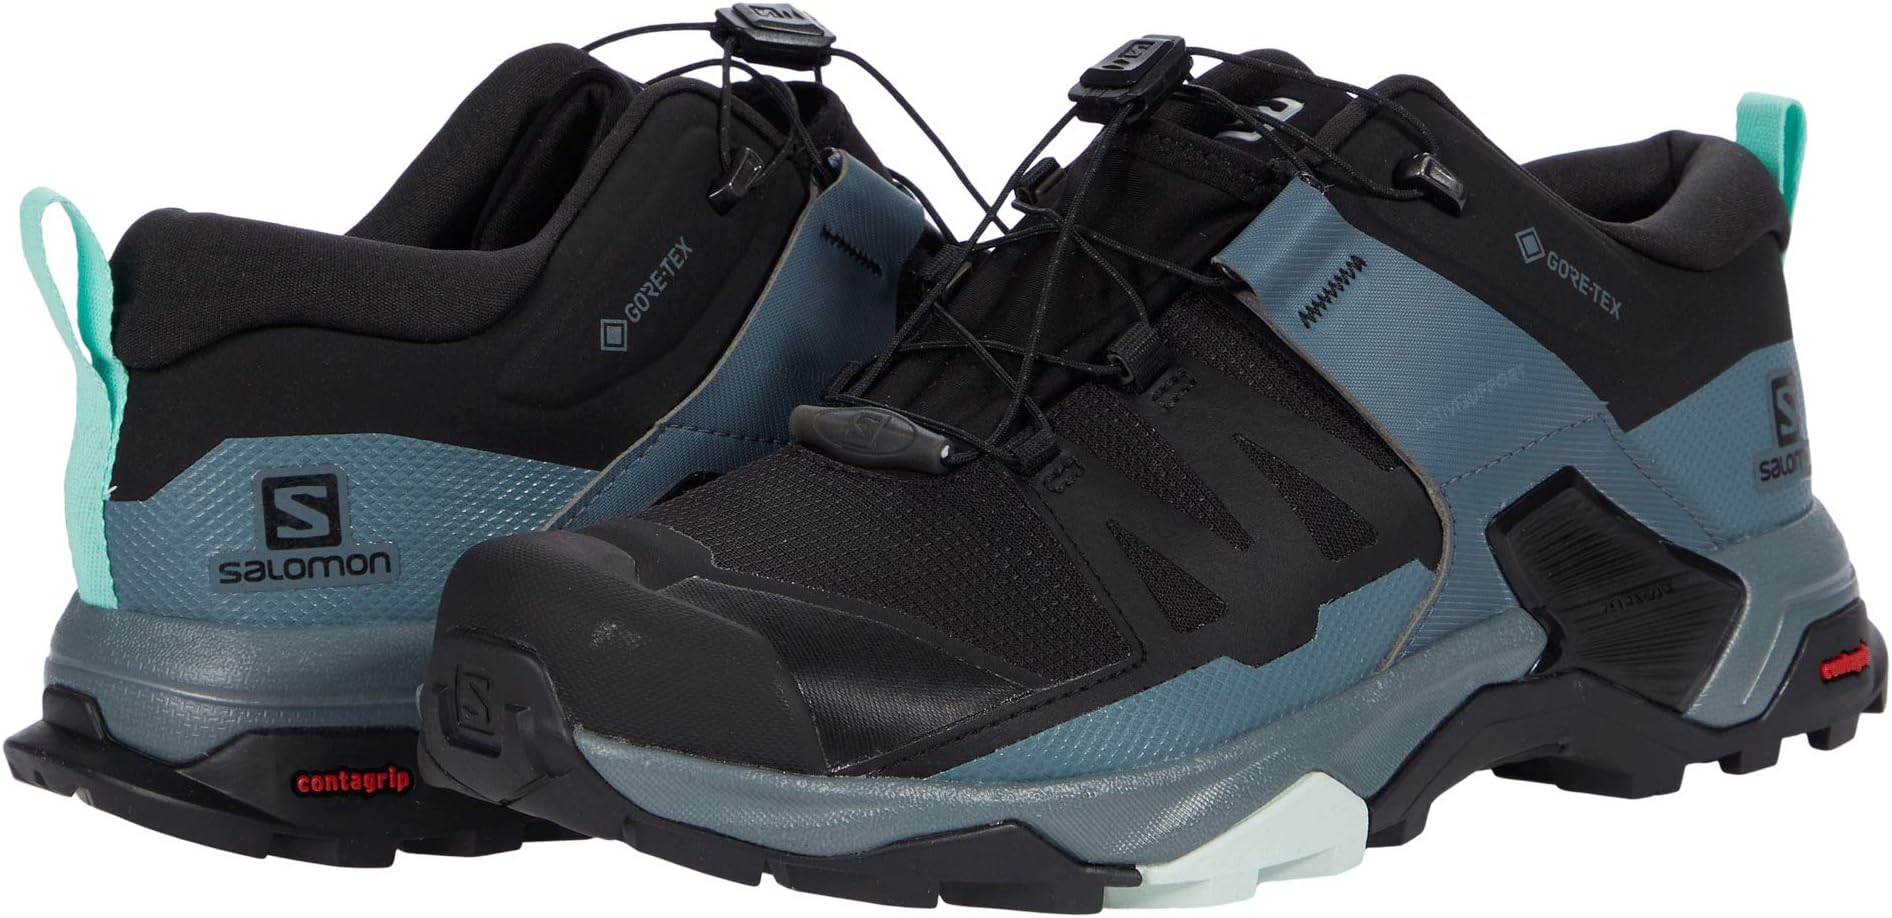 Походная обувь X Ultra 4 GTX Salomon, цвет Black/Stormy Weather/Opal Blue baker kathryn black panther stormy weather book 1